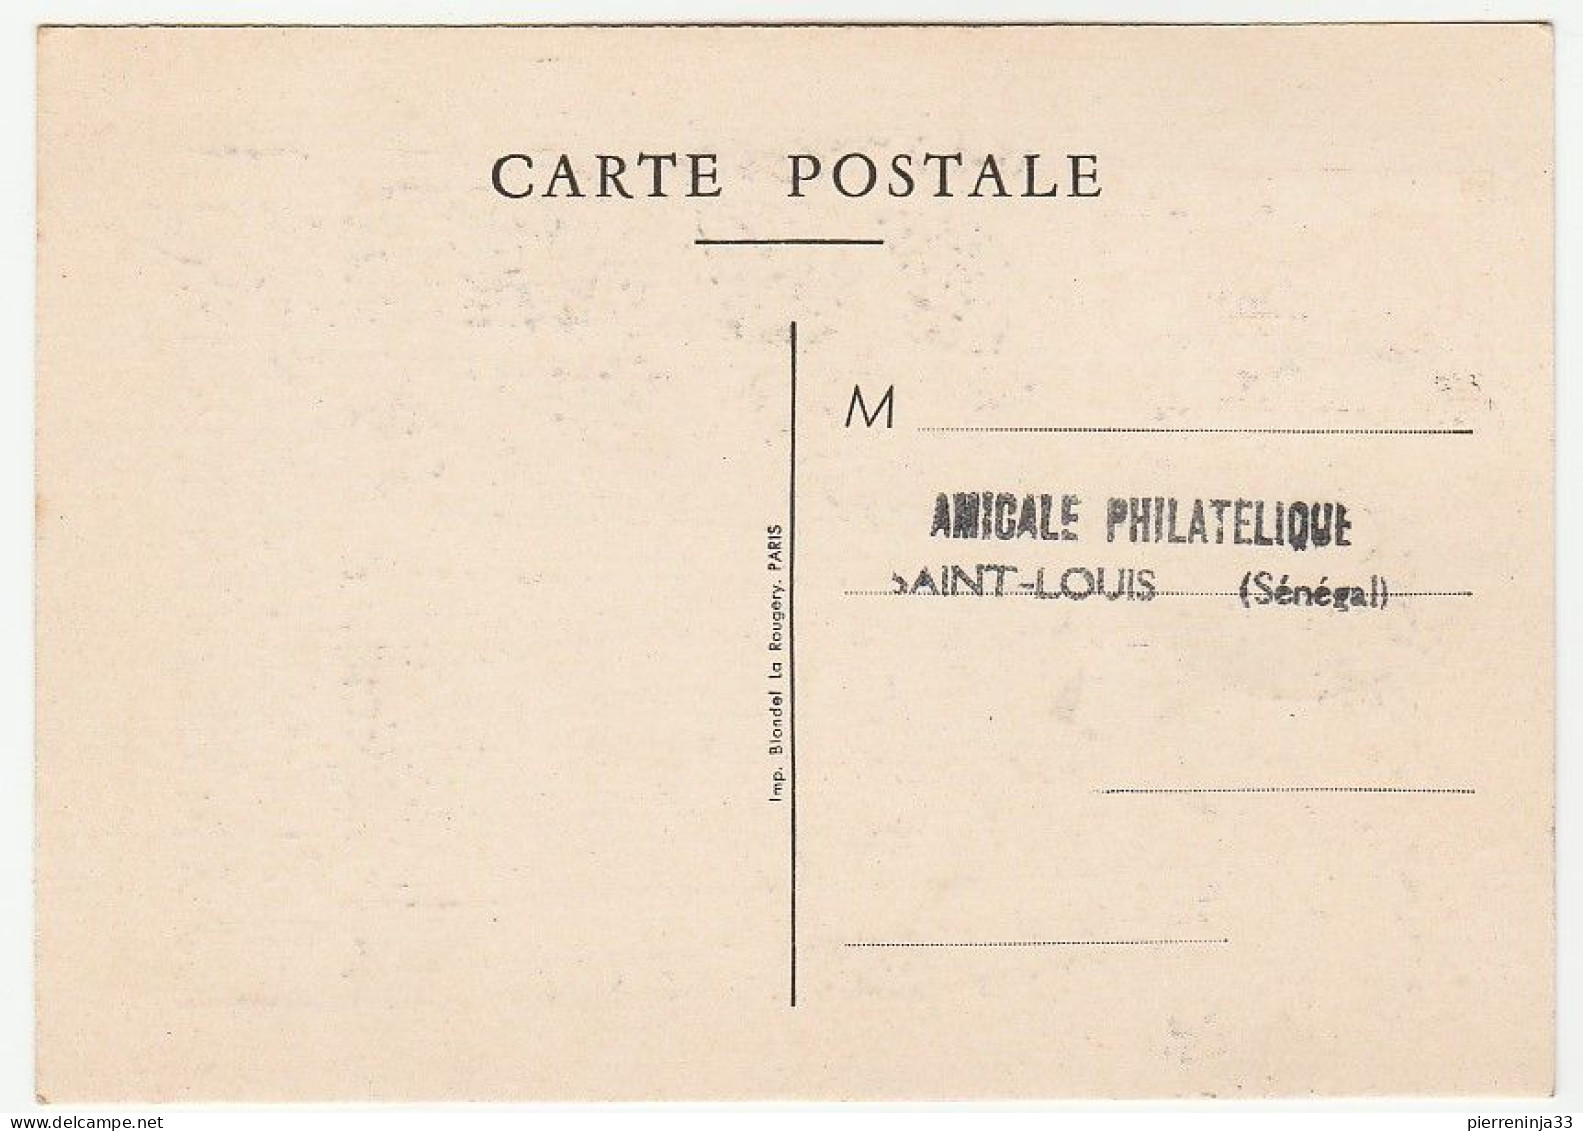 Carte Journée Du Timbre 1950,  St Louis Du Sénégal - Lettres & Documents